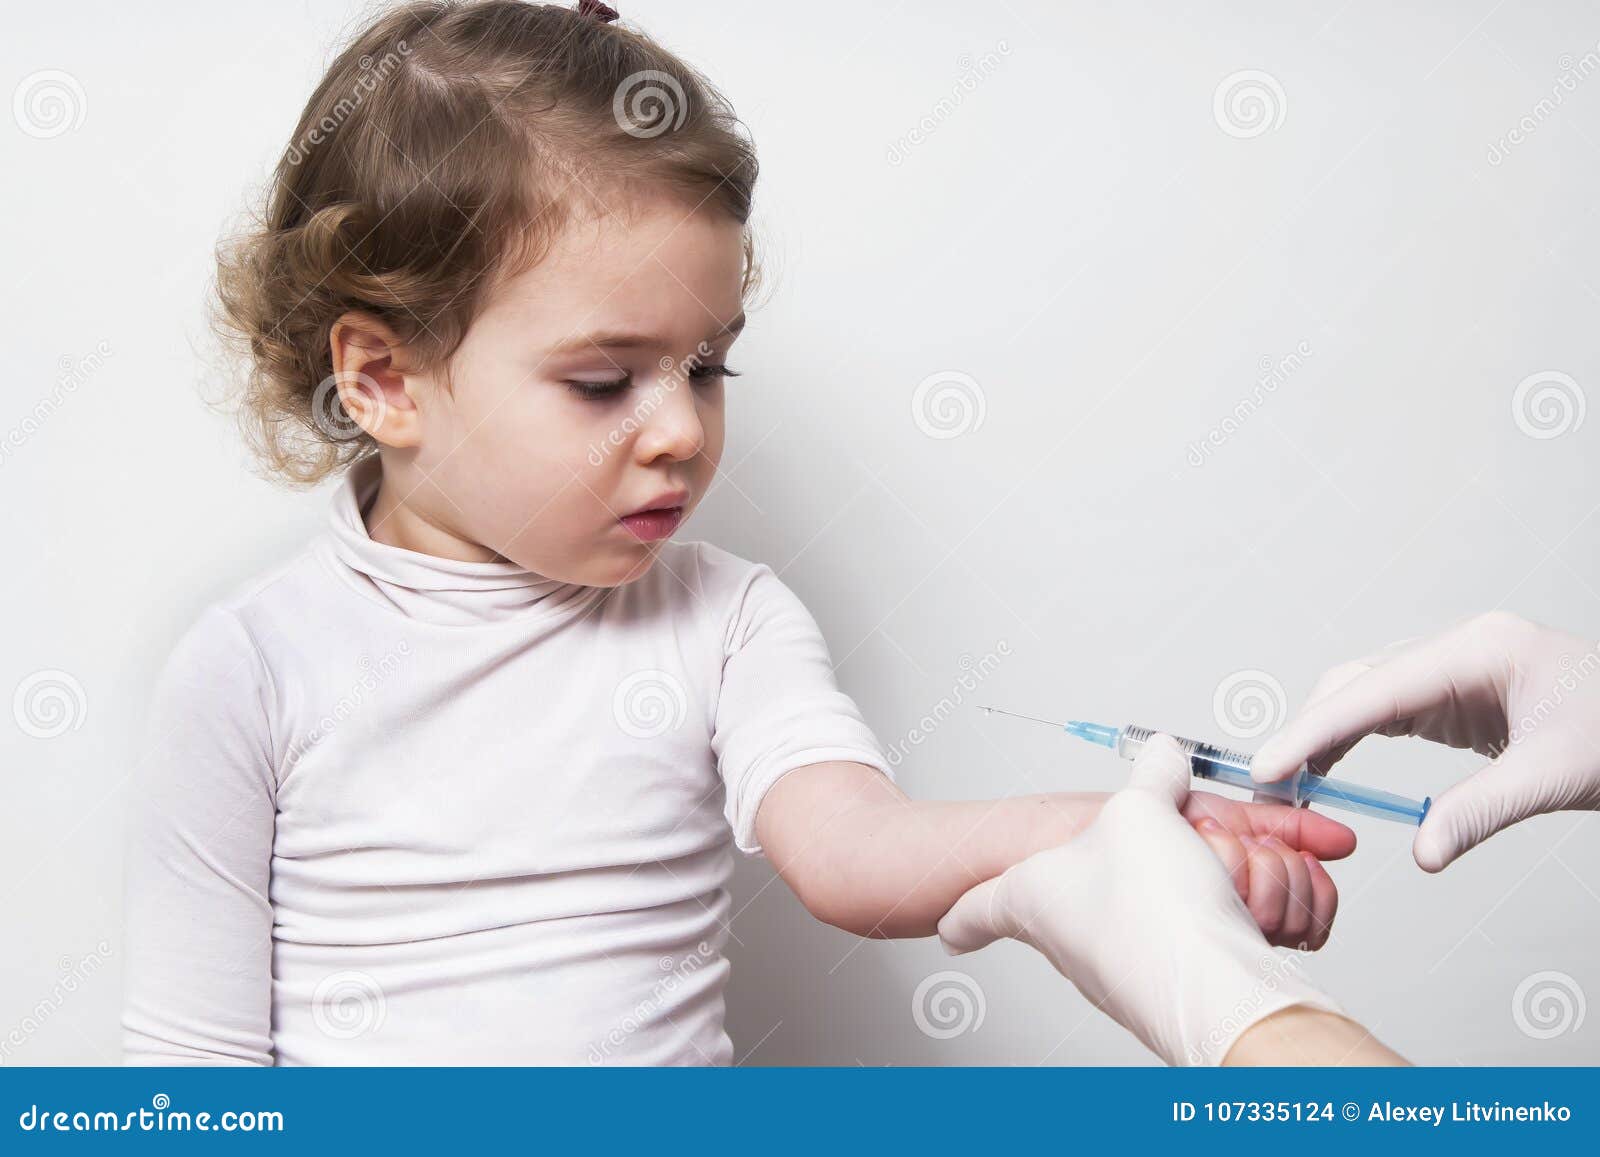 Включи маленькие дети делают укол. Шприц для детей. Детский шприц для прививок. Уколы и прививки. Девочка со шприцом прививка.